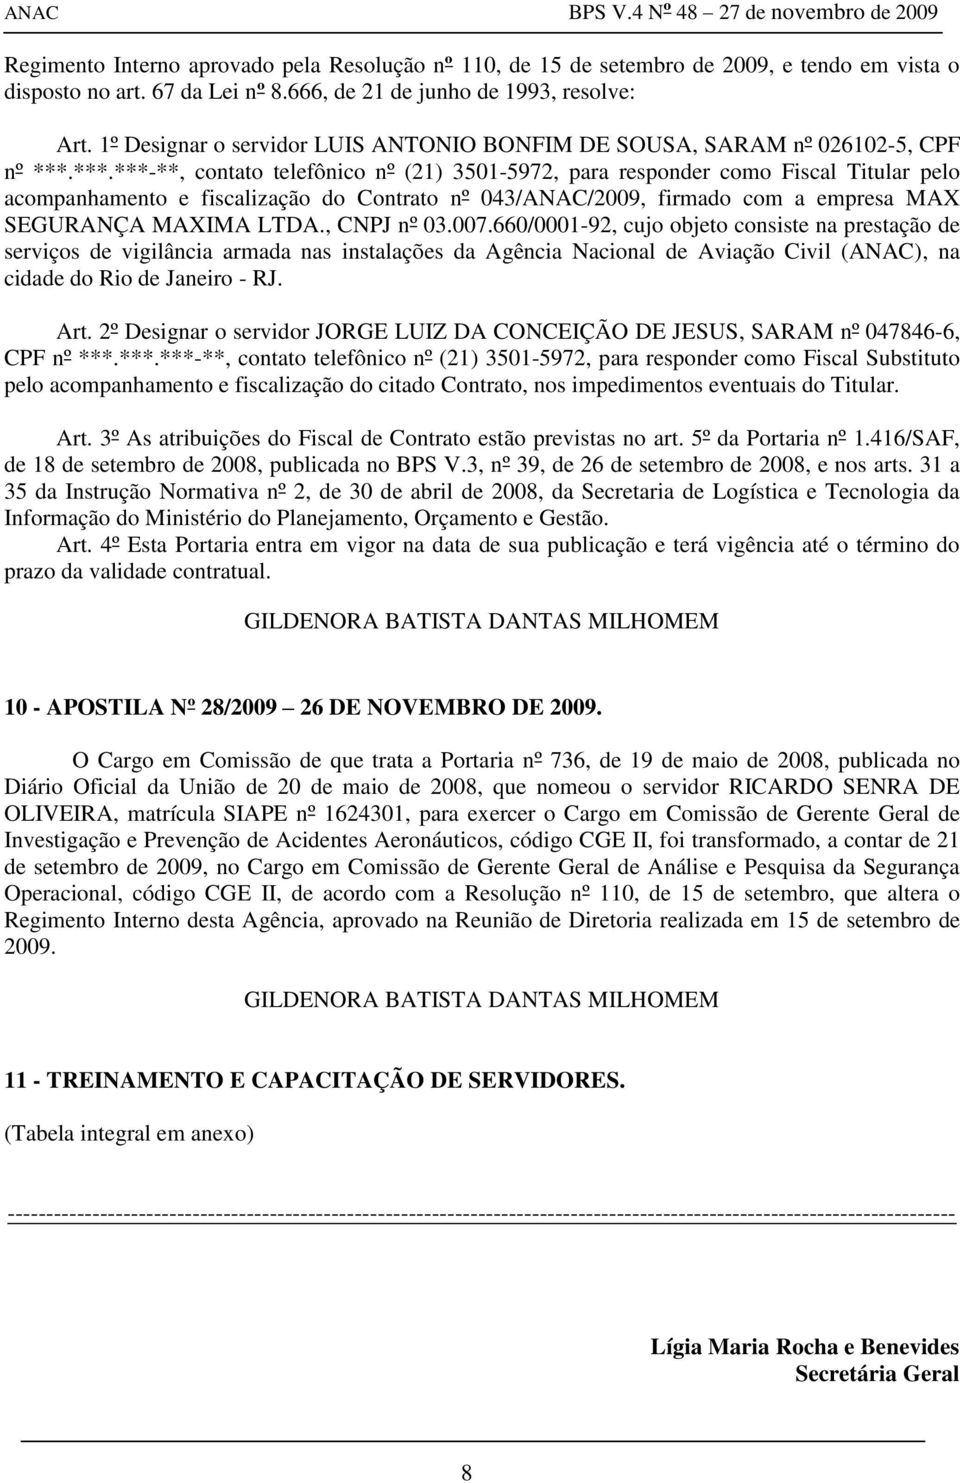 , CNPJ nº 03.007.660/0001-92, cujo objeto consiste na prestação de serviços de vigilância armada nas instalações da Agência Nacional de Aviação Civil (ANAC), na cidade do Rio de Janeiro - RJ. Art.